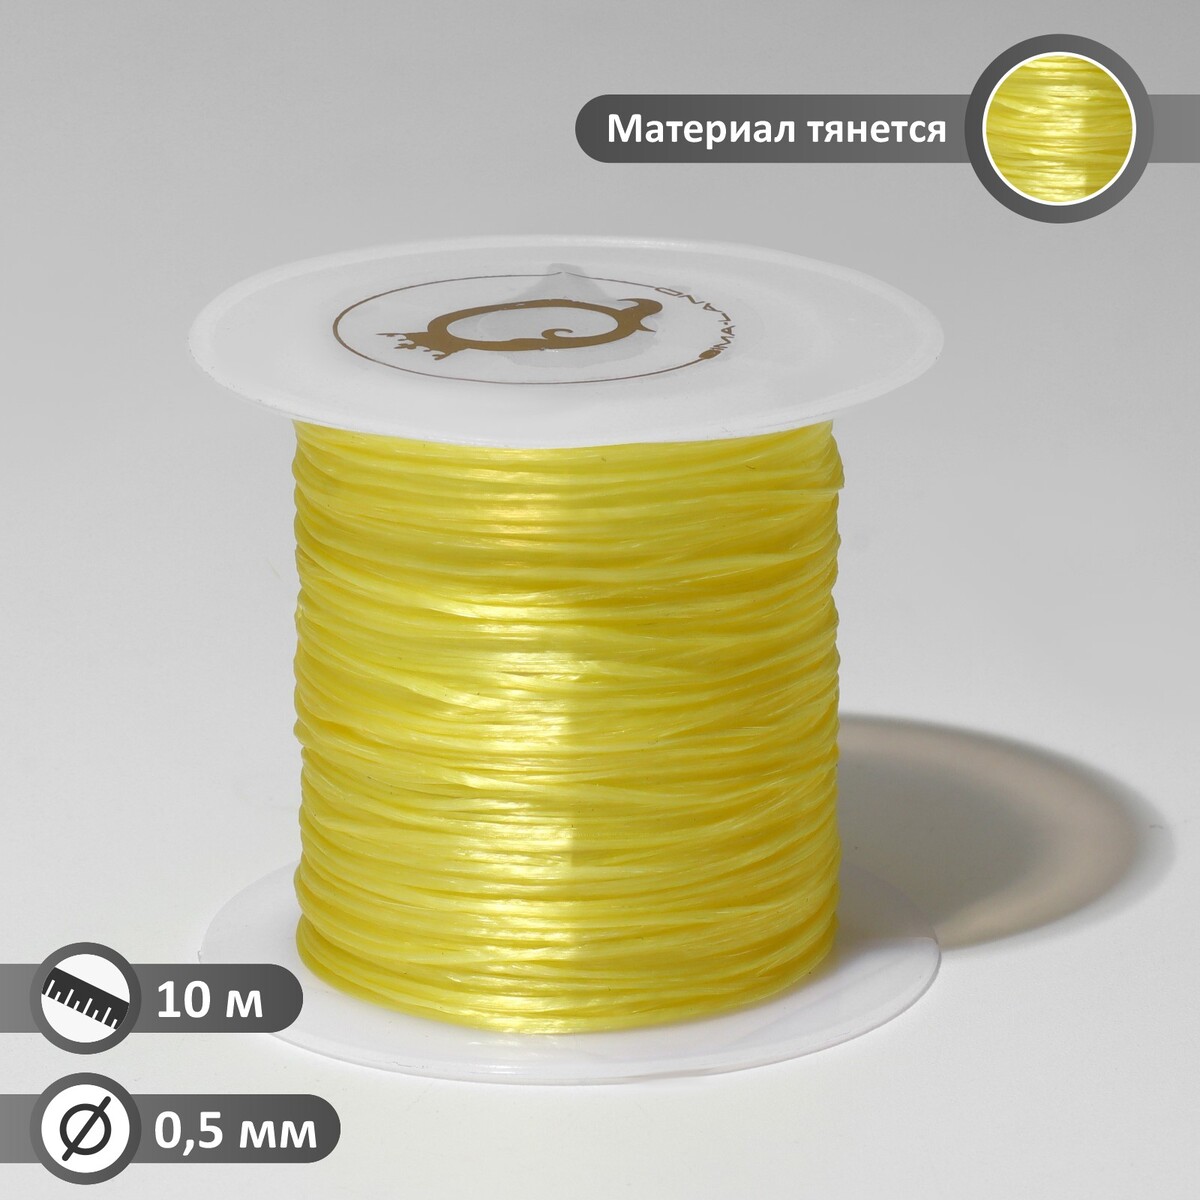 Нить силиконовая (резинка) d=0,5 мм, l=10 м (прочность 2250 денье), цвет желтый